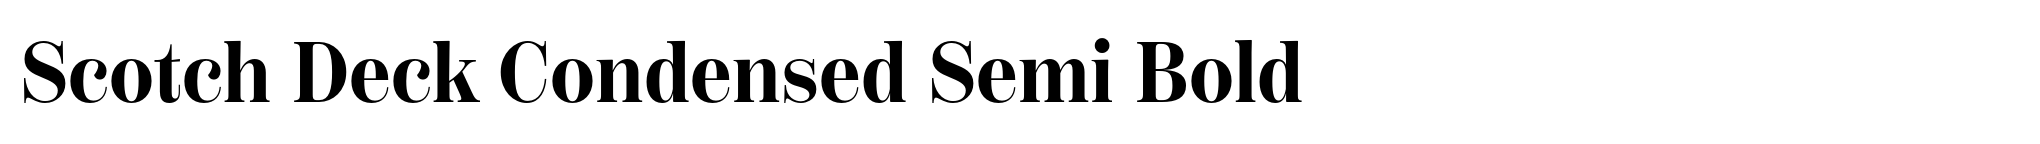 Scotch Deck Condensed Semi Bold image